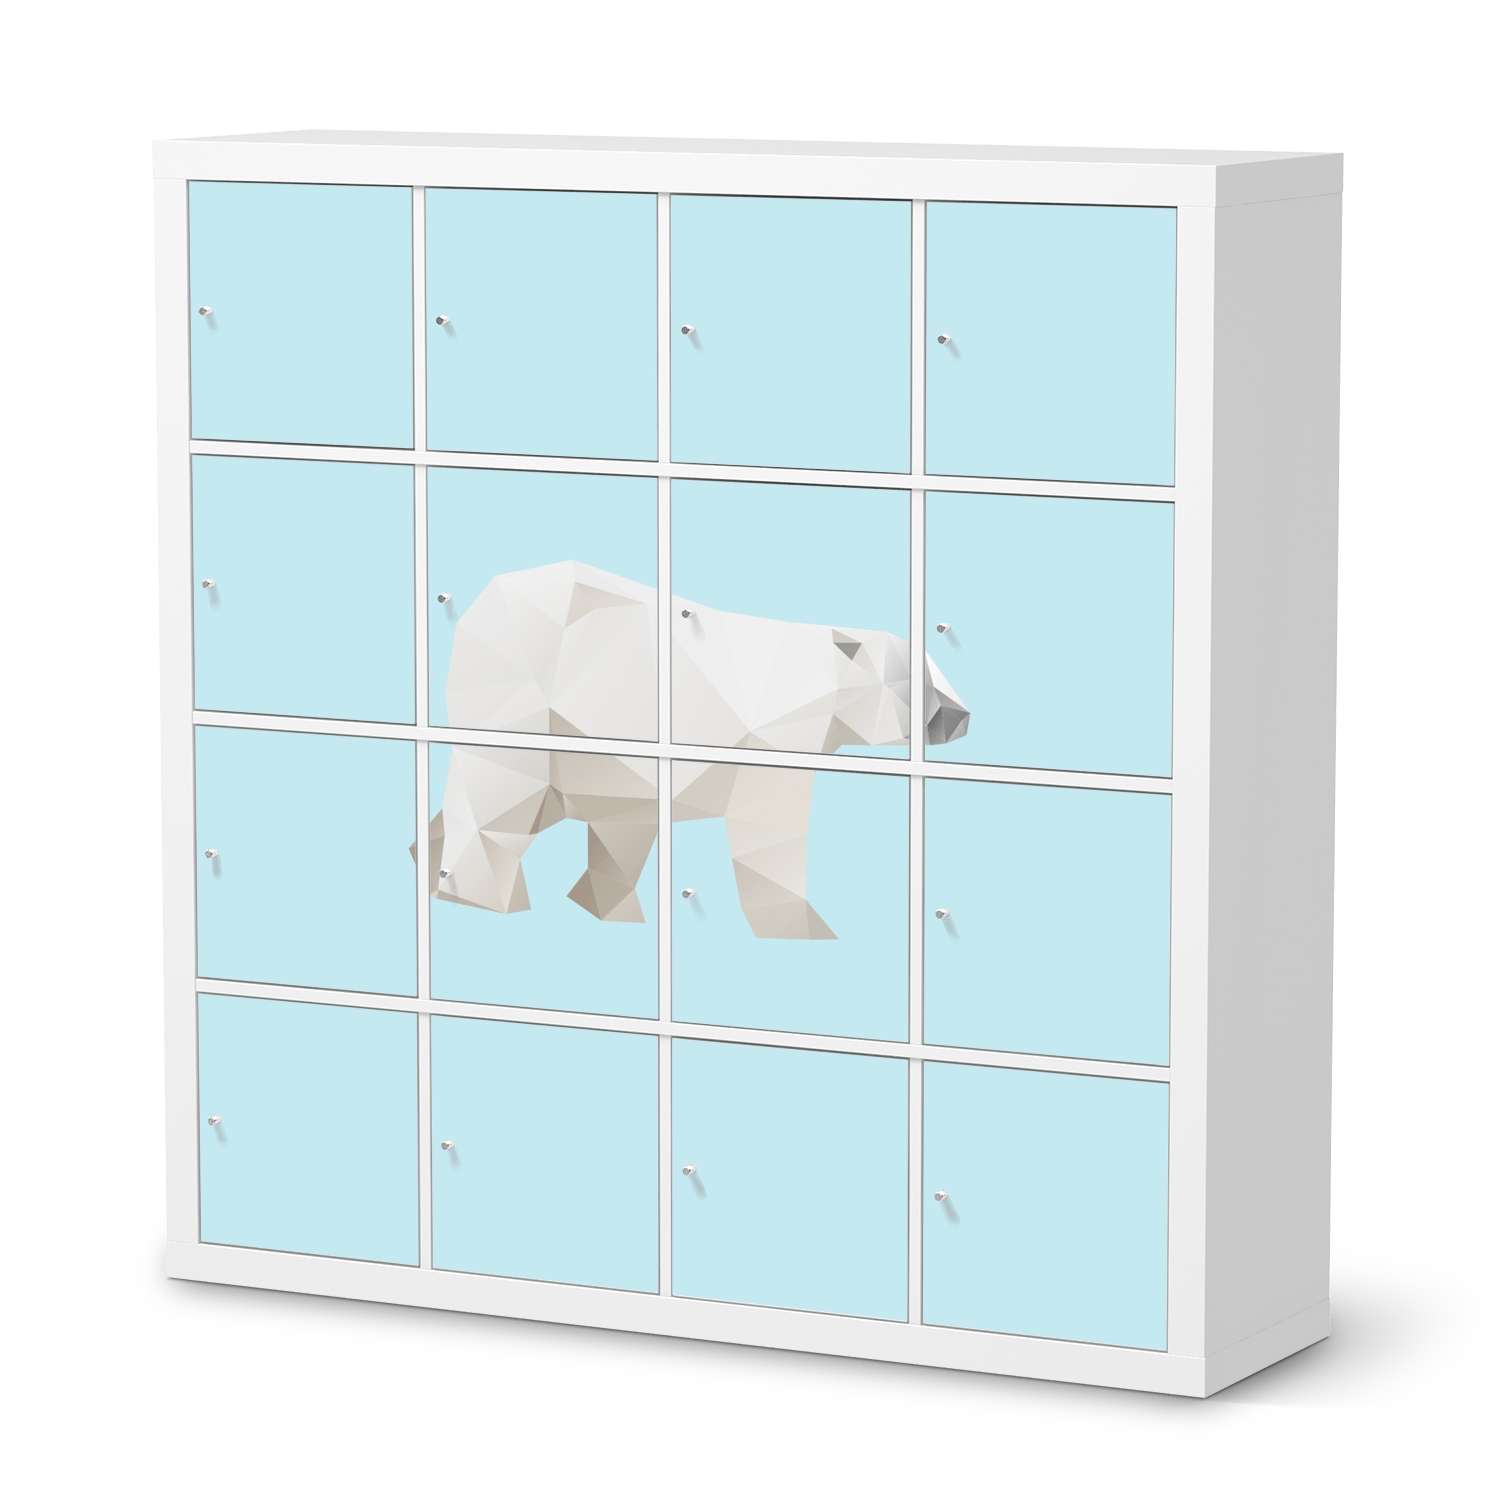 M?belfolie IKEA Kallax Regal 16 T?ren - Design: Origami Polar Bear von creatisto